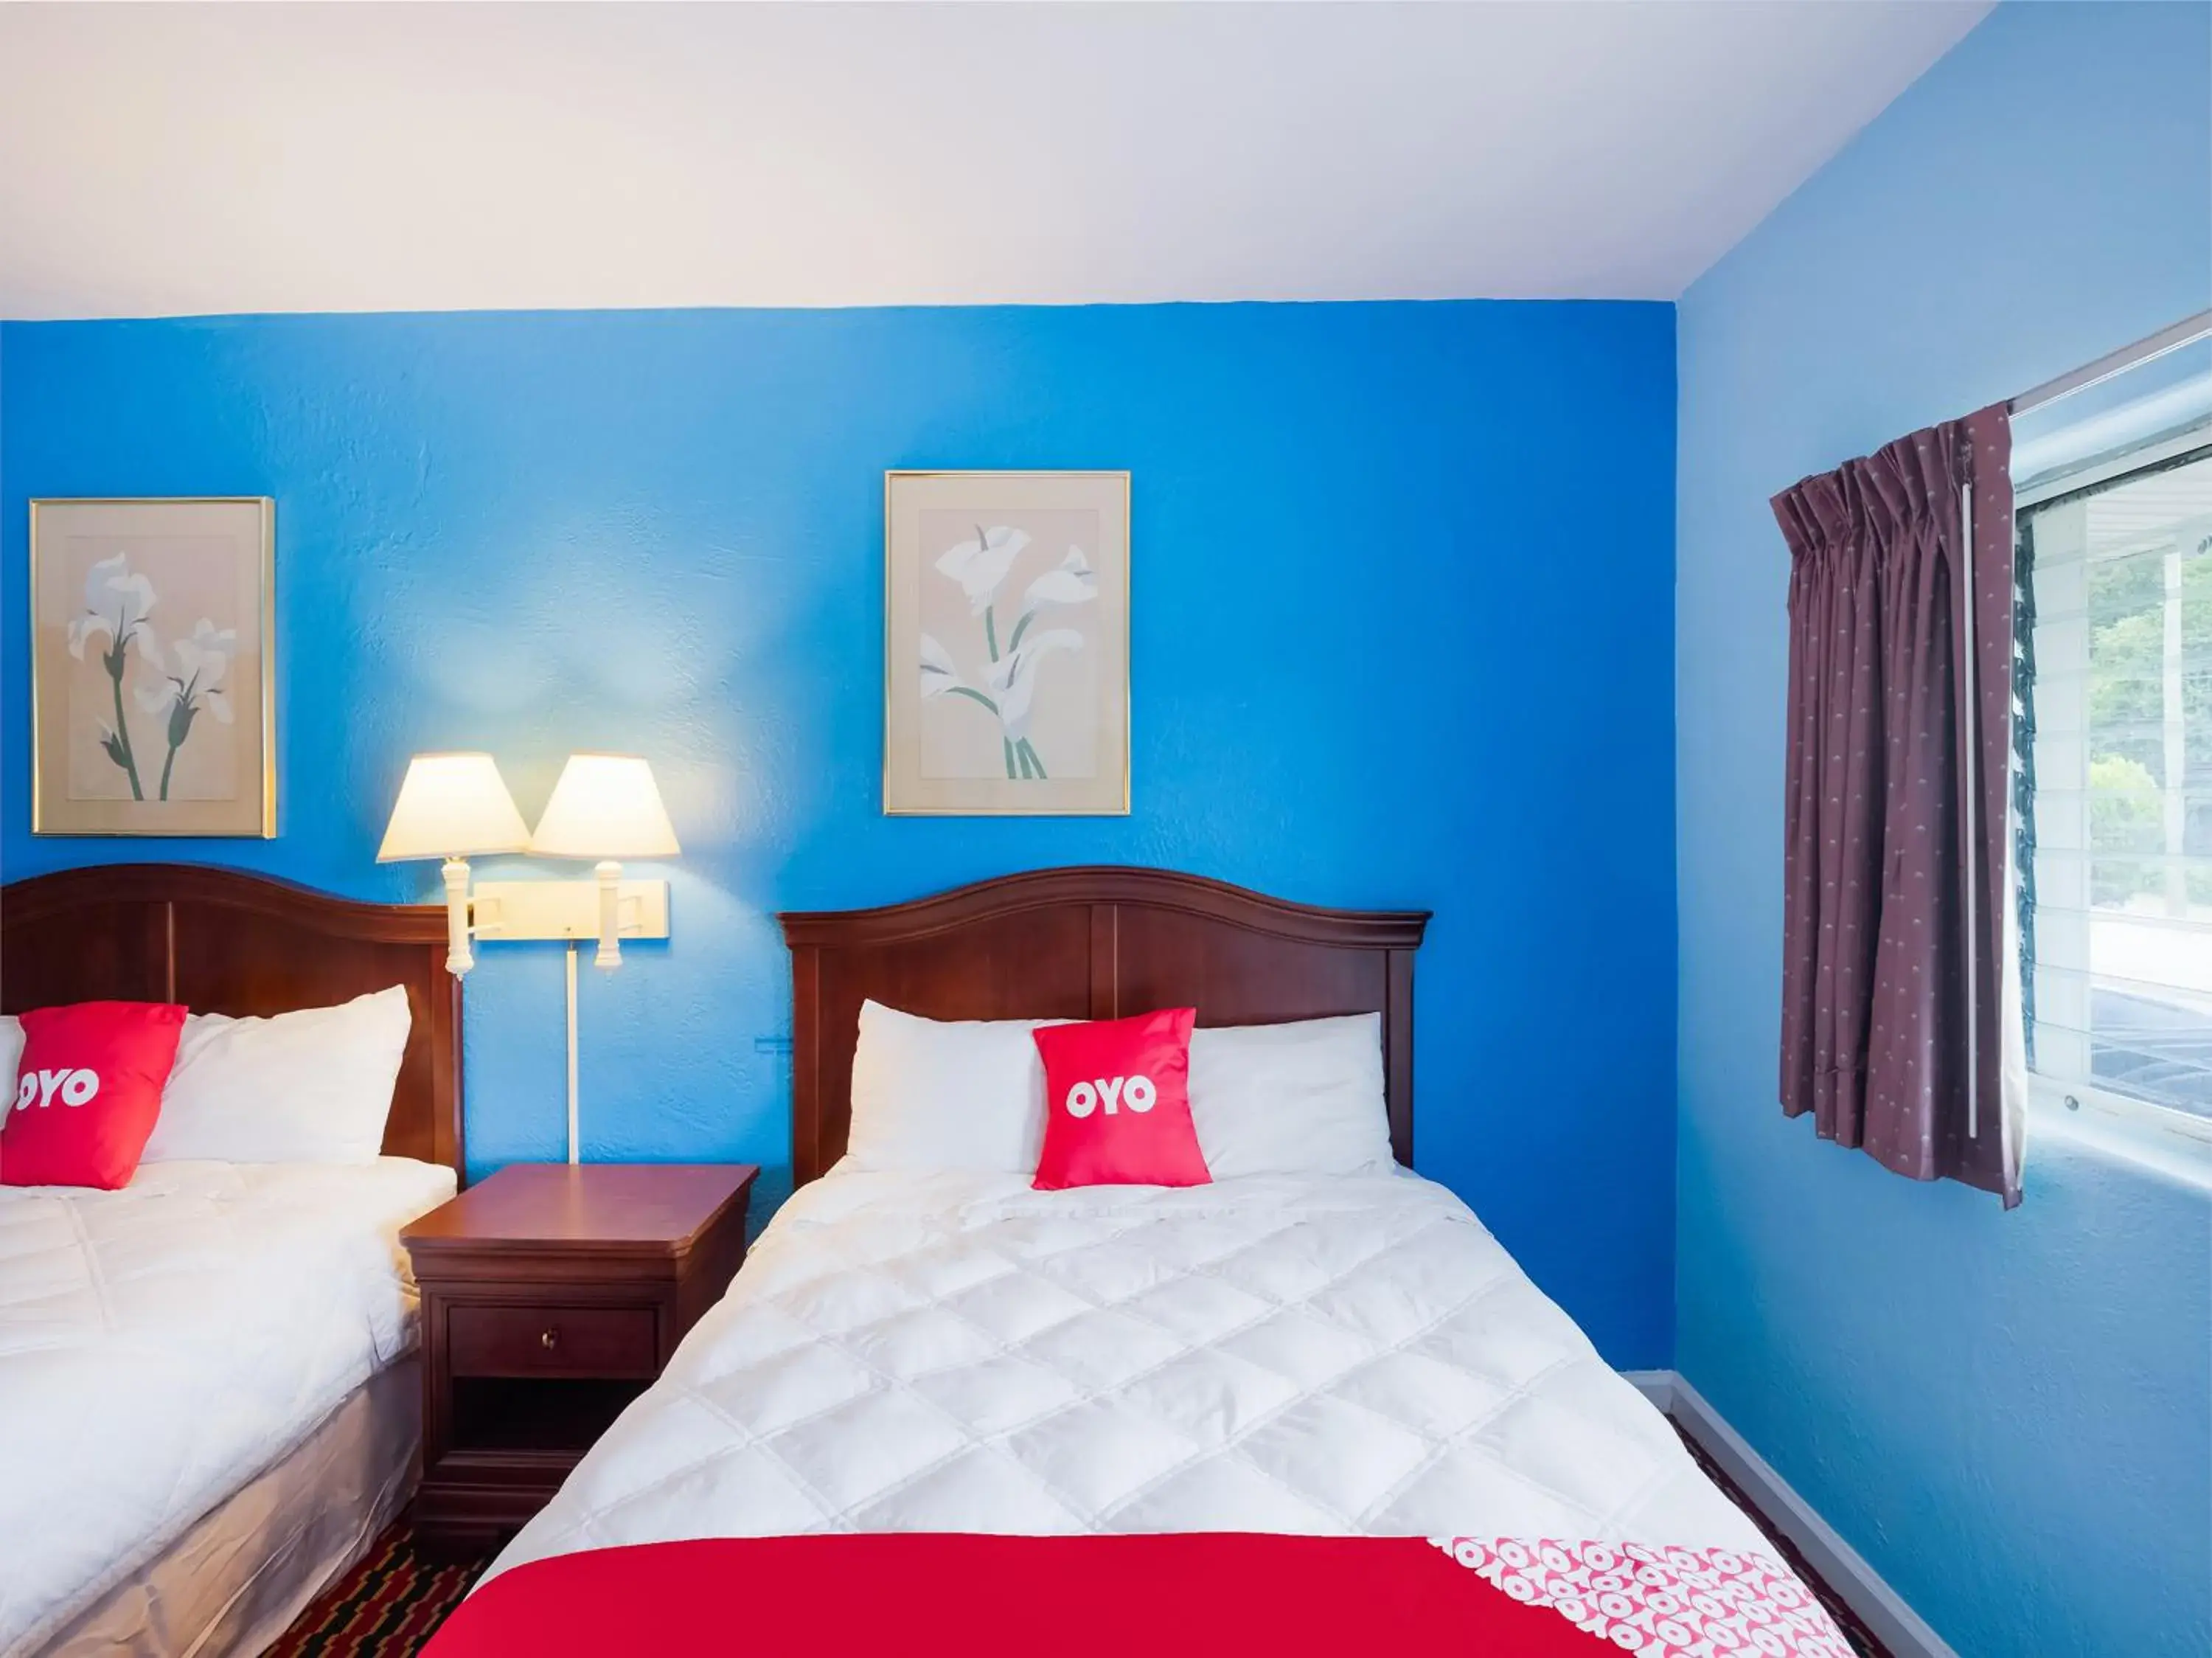 Bedroom in OYO Hotel Salem-Roanoke I-81